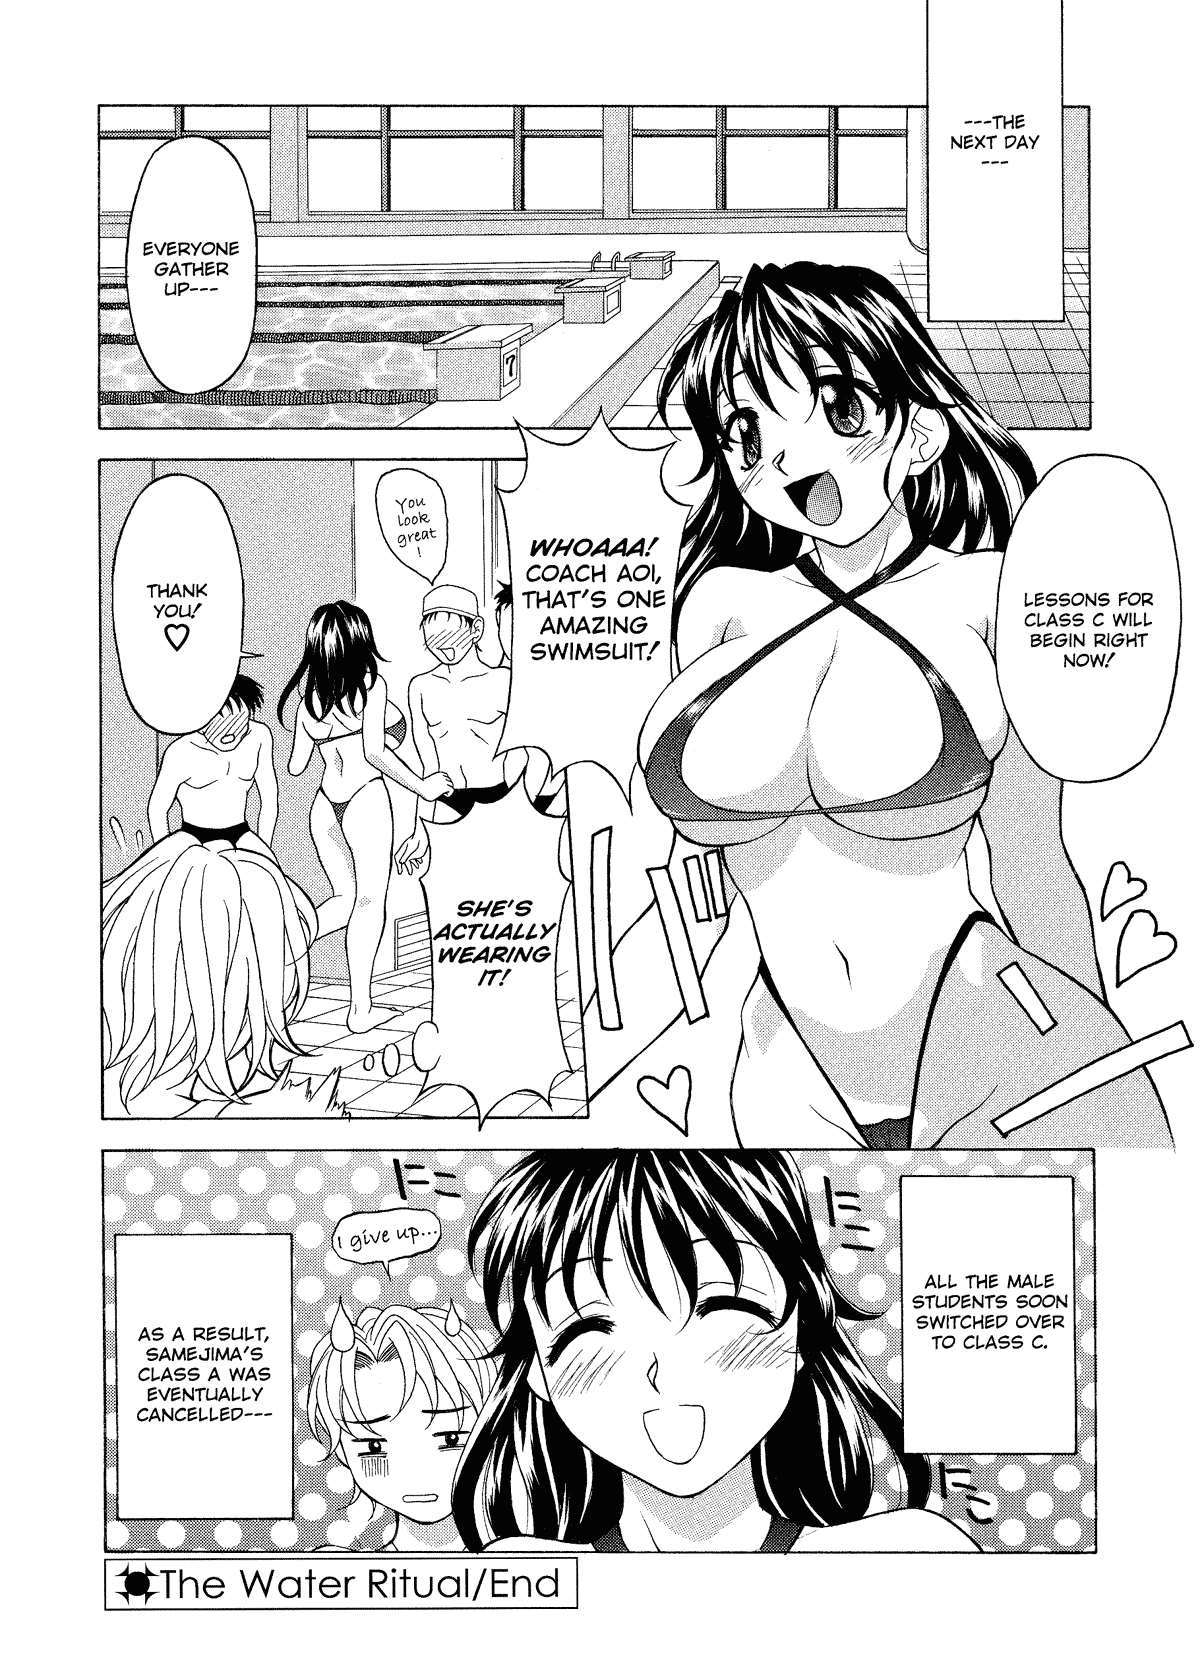 The Water Ritual 15 hentai manga